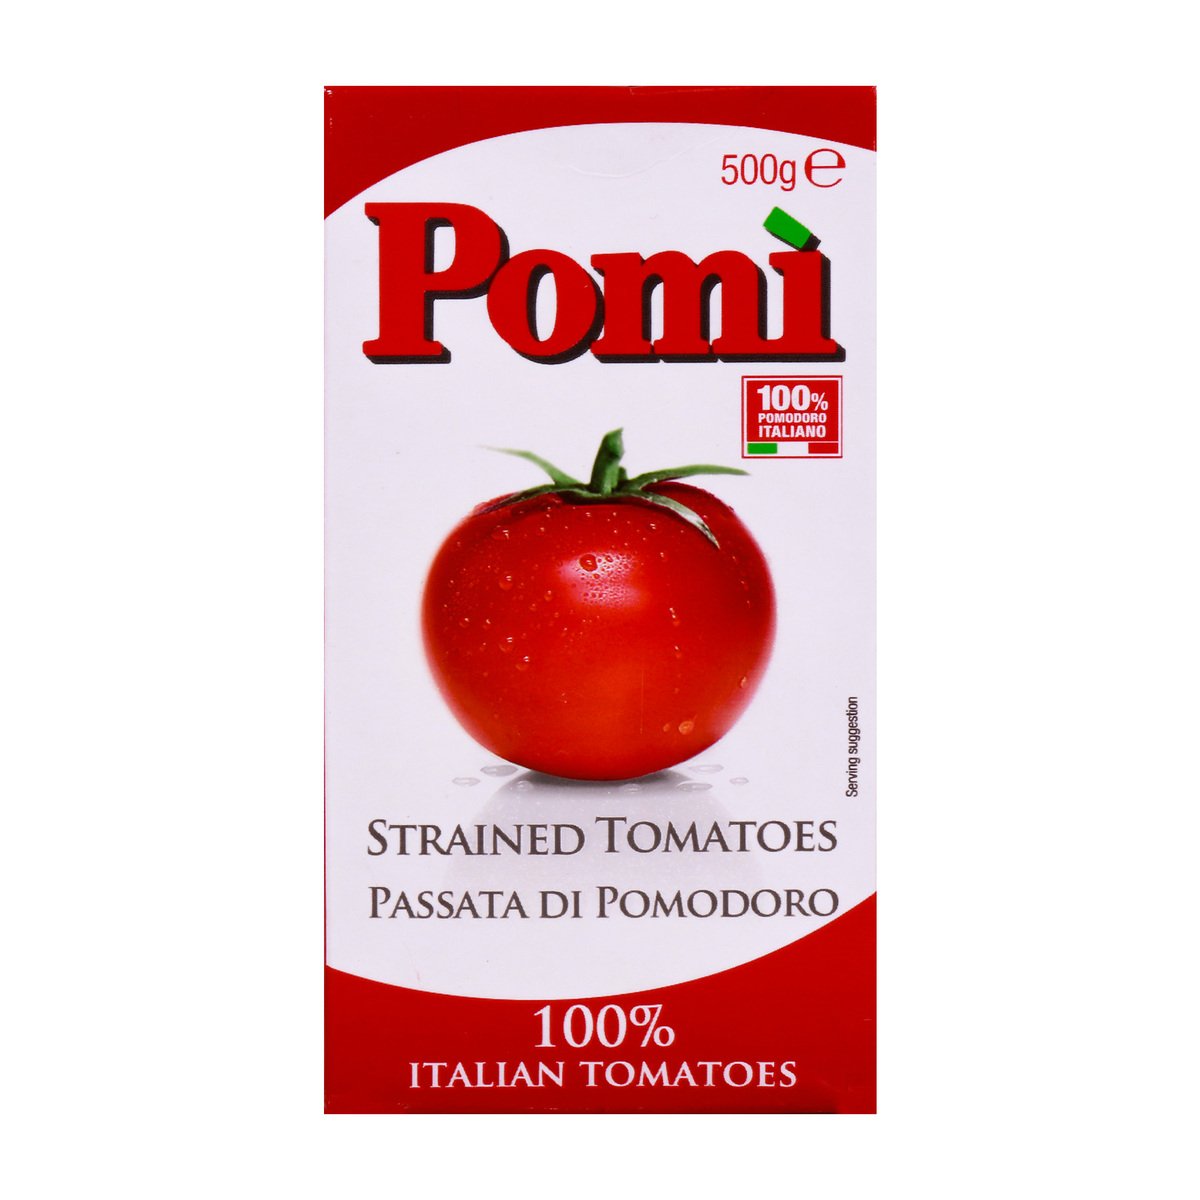 特別セール品 Pomi (NOT A CASE) Tomatoes Strained Organic その他